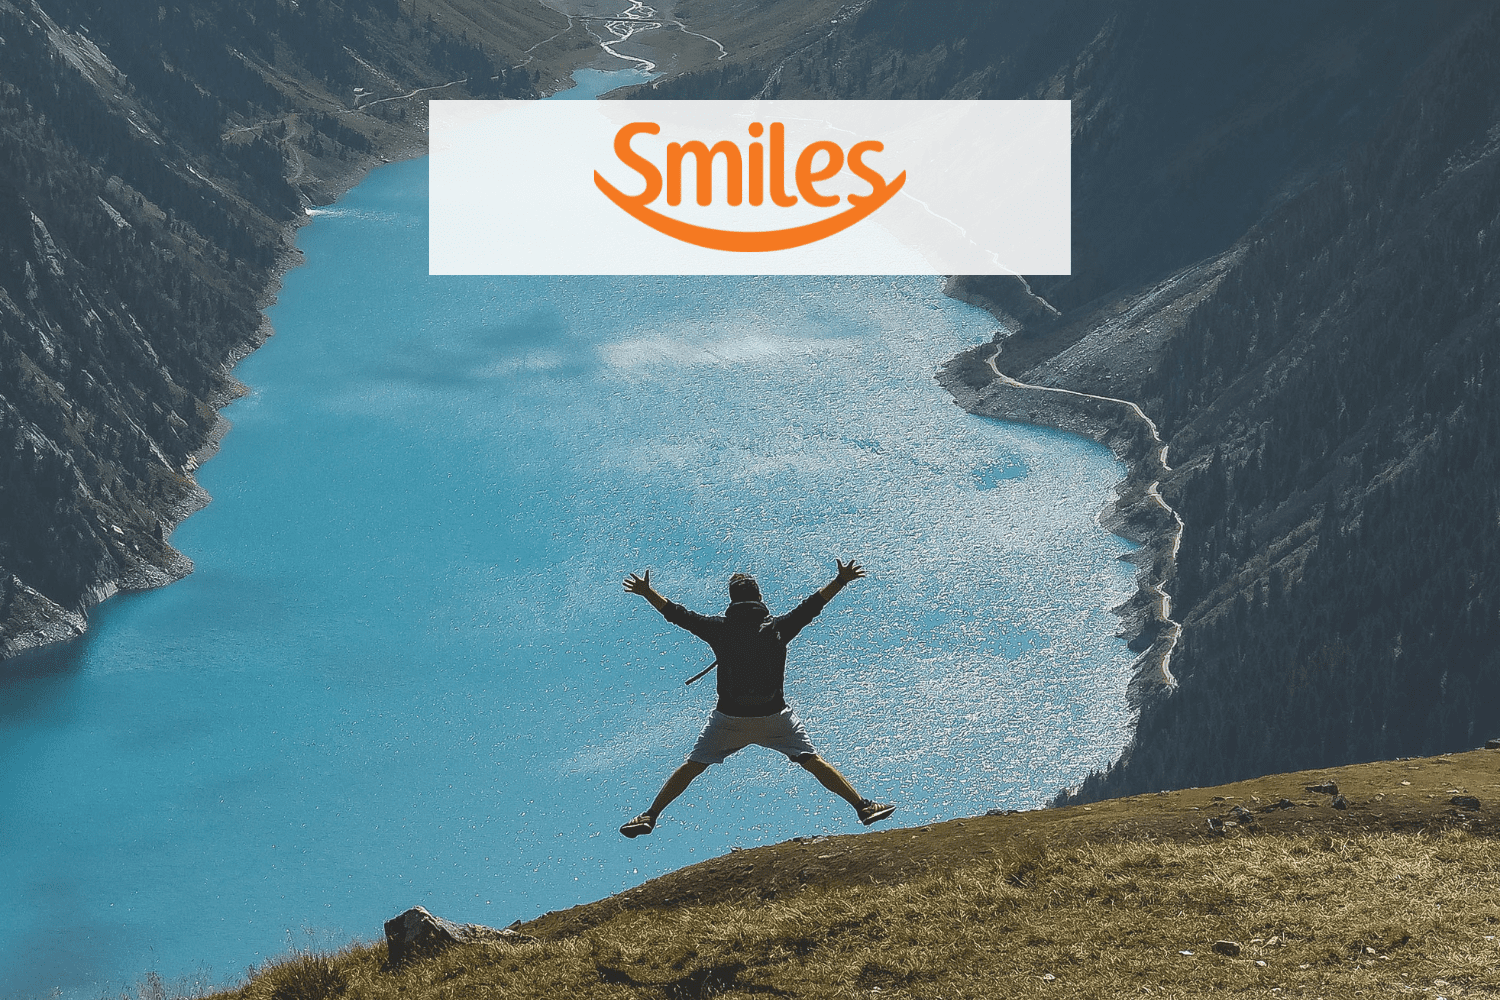 pessoa pulando olhando o horizonte com a logo Smiles